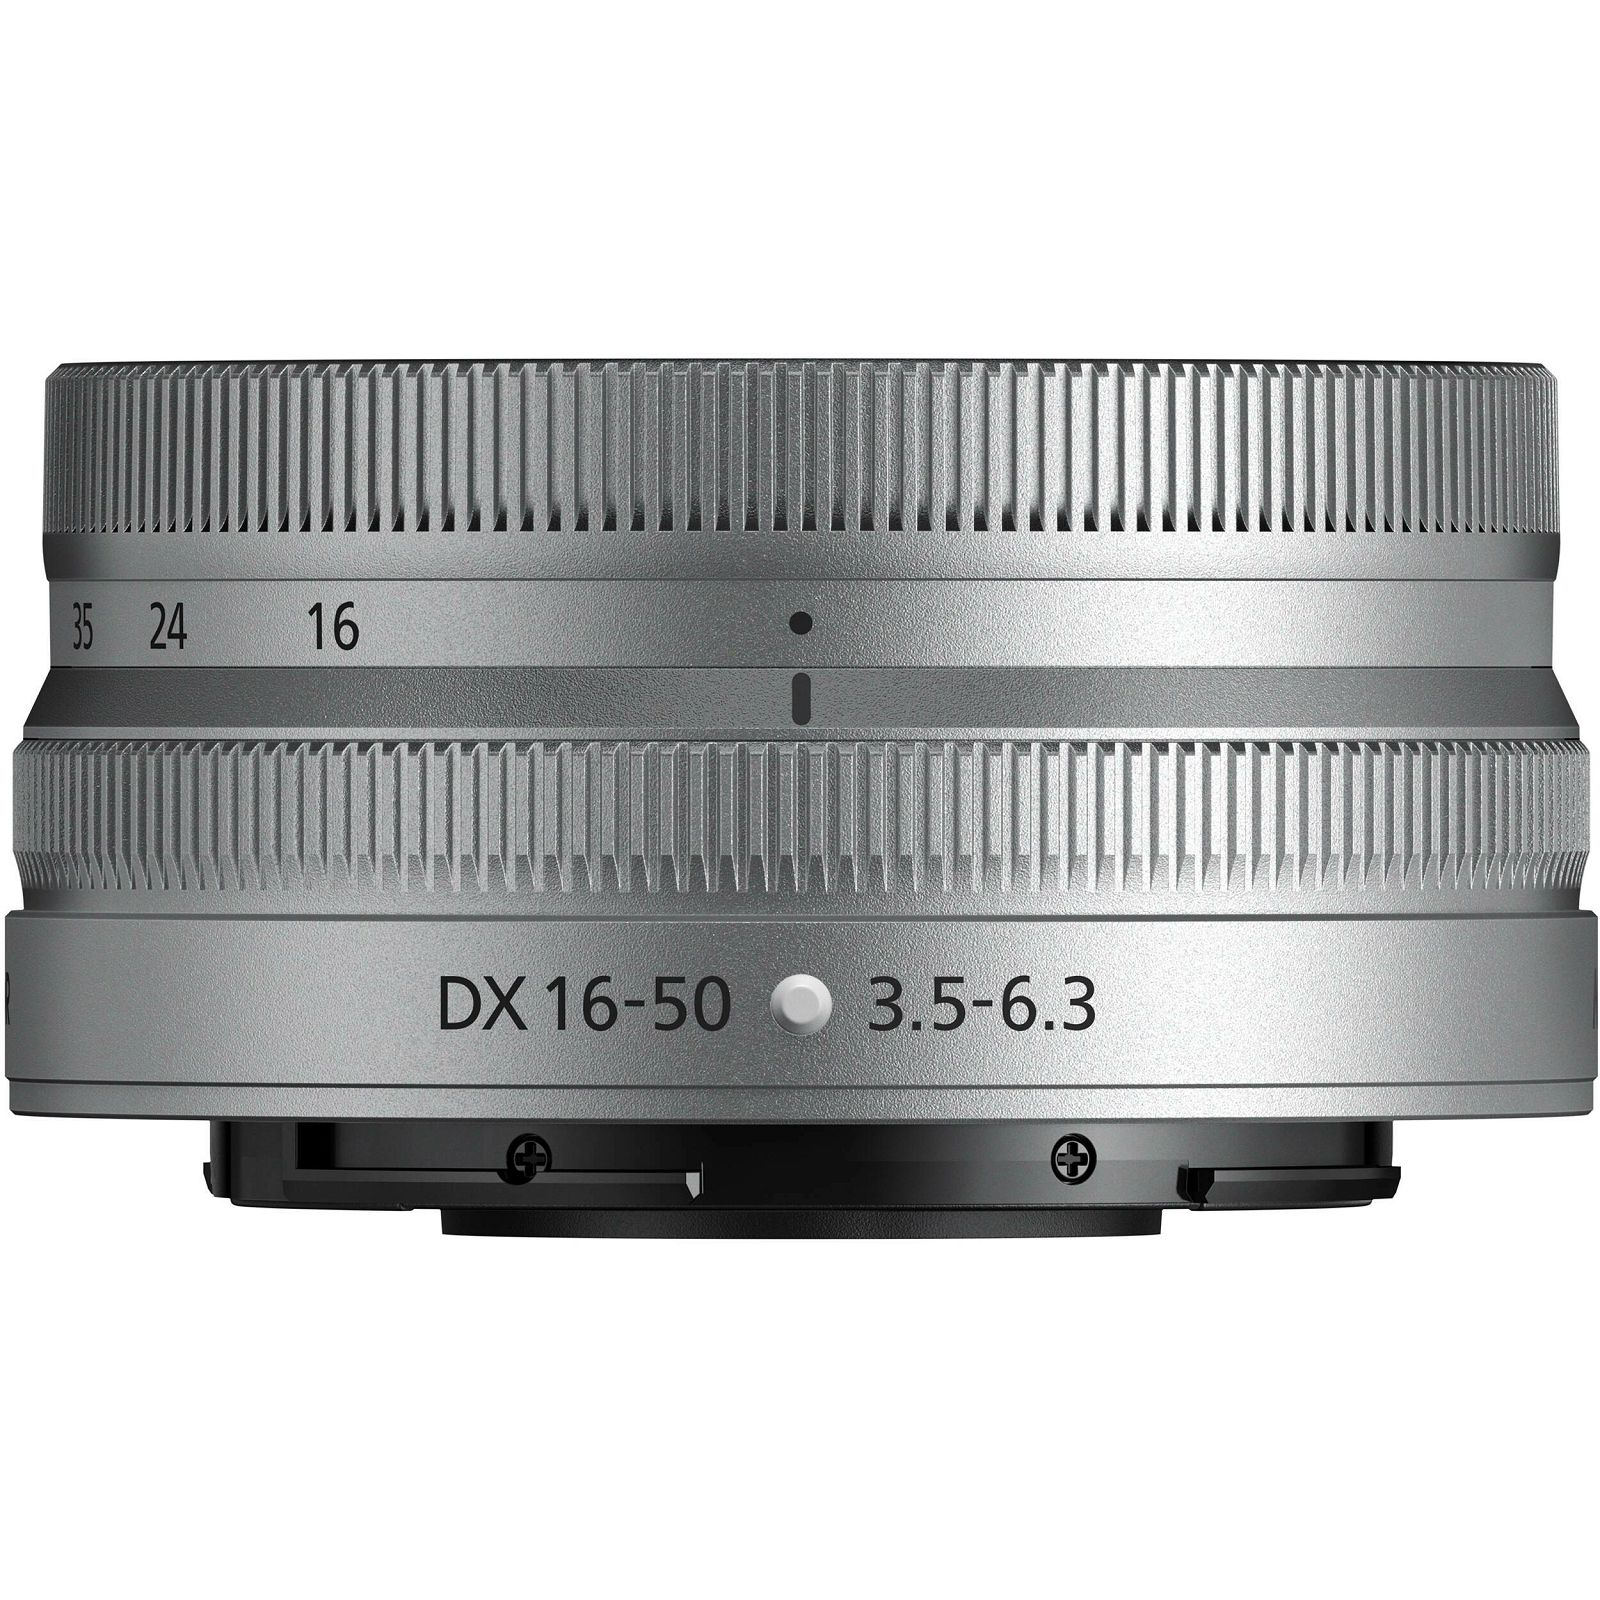 Nikon Z 16-50mm f/3.5-6.3 DX Silver objektiv (JMA715DA)